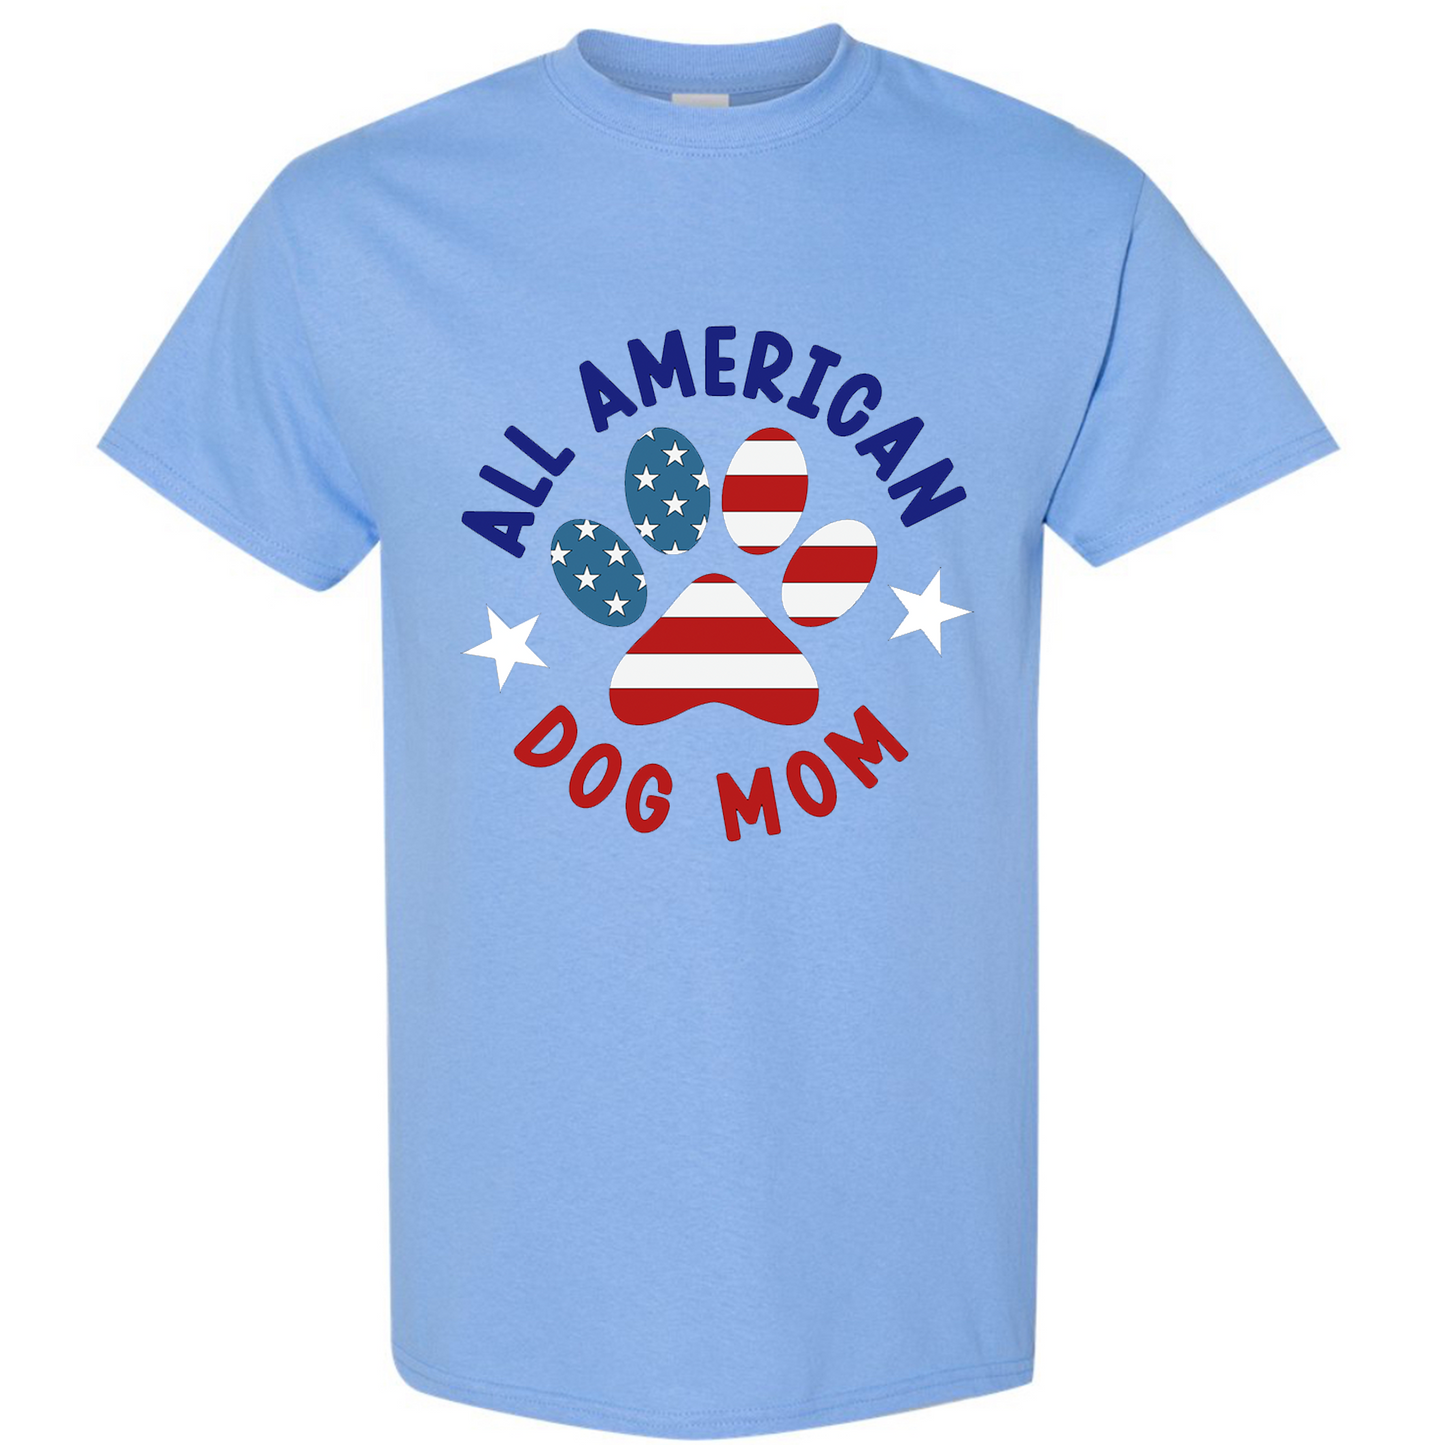 All American Dog Mom Tshirt